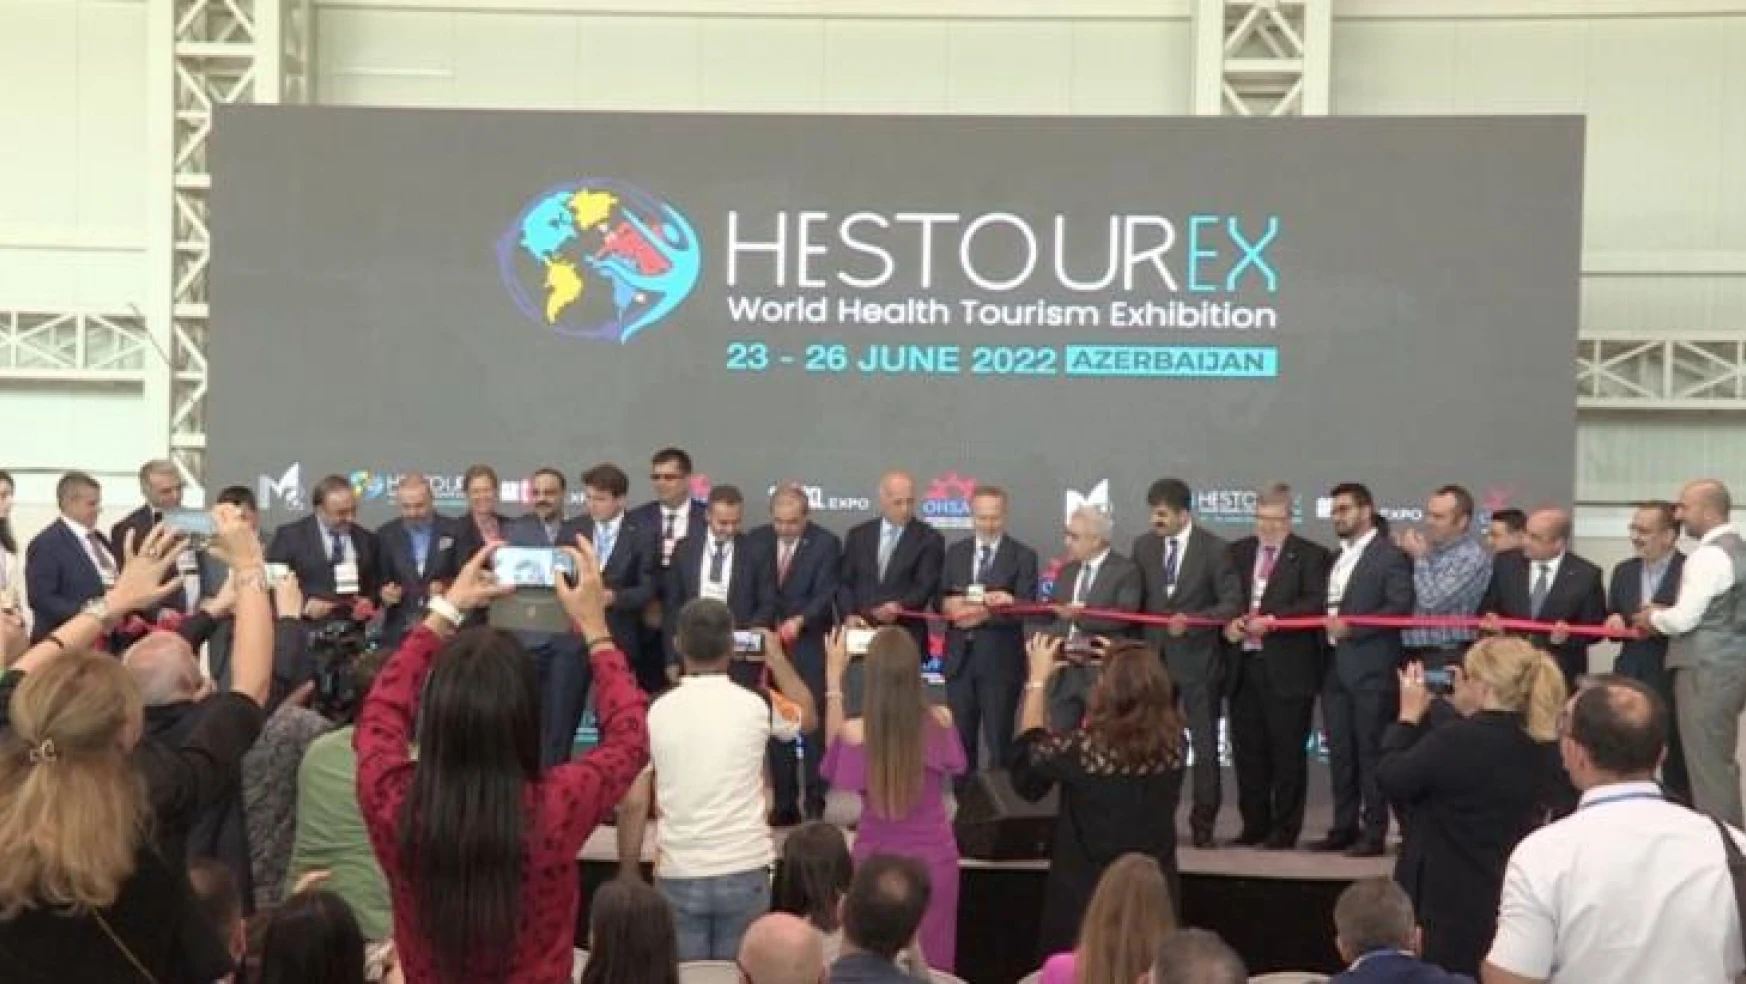 Dünya sağlık turizmi fuarı Hestourex 2022 kapılarını açtı